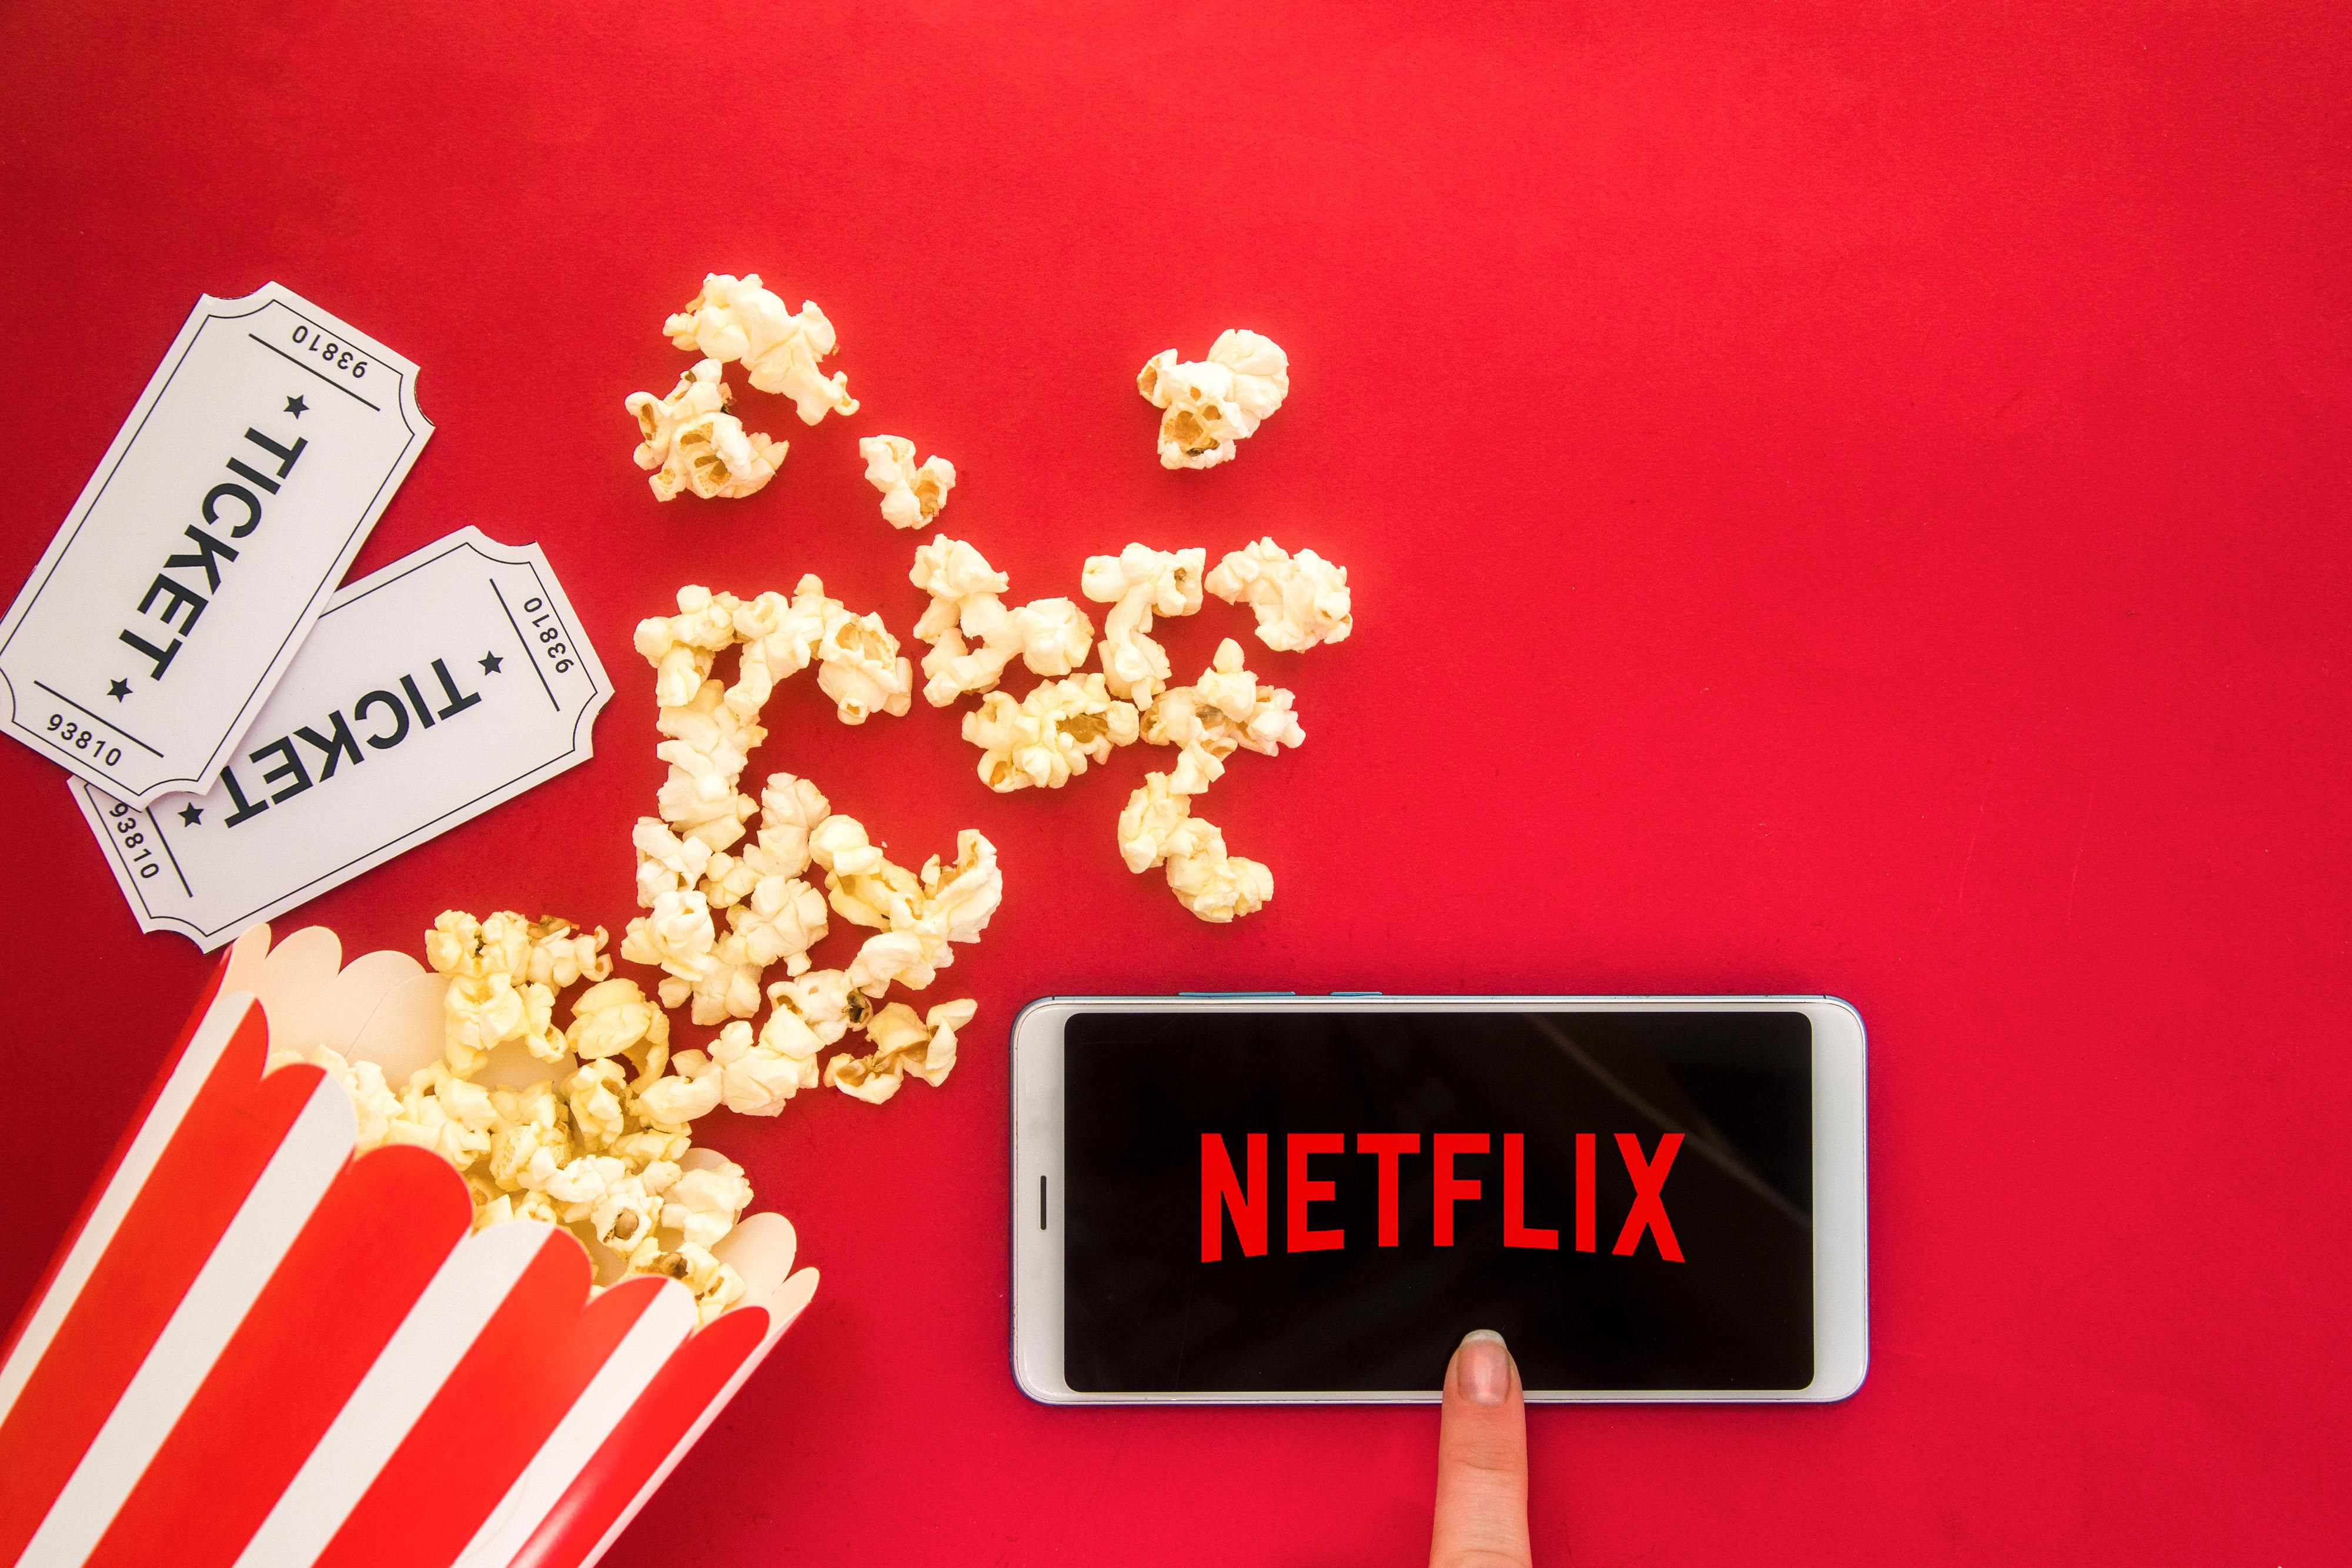 Netflix, telefon és popcorn